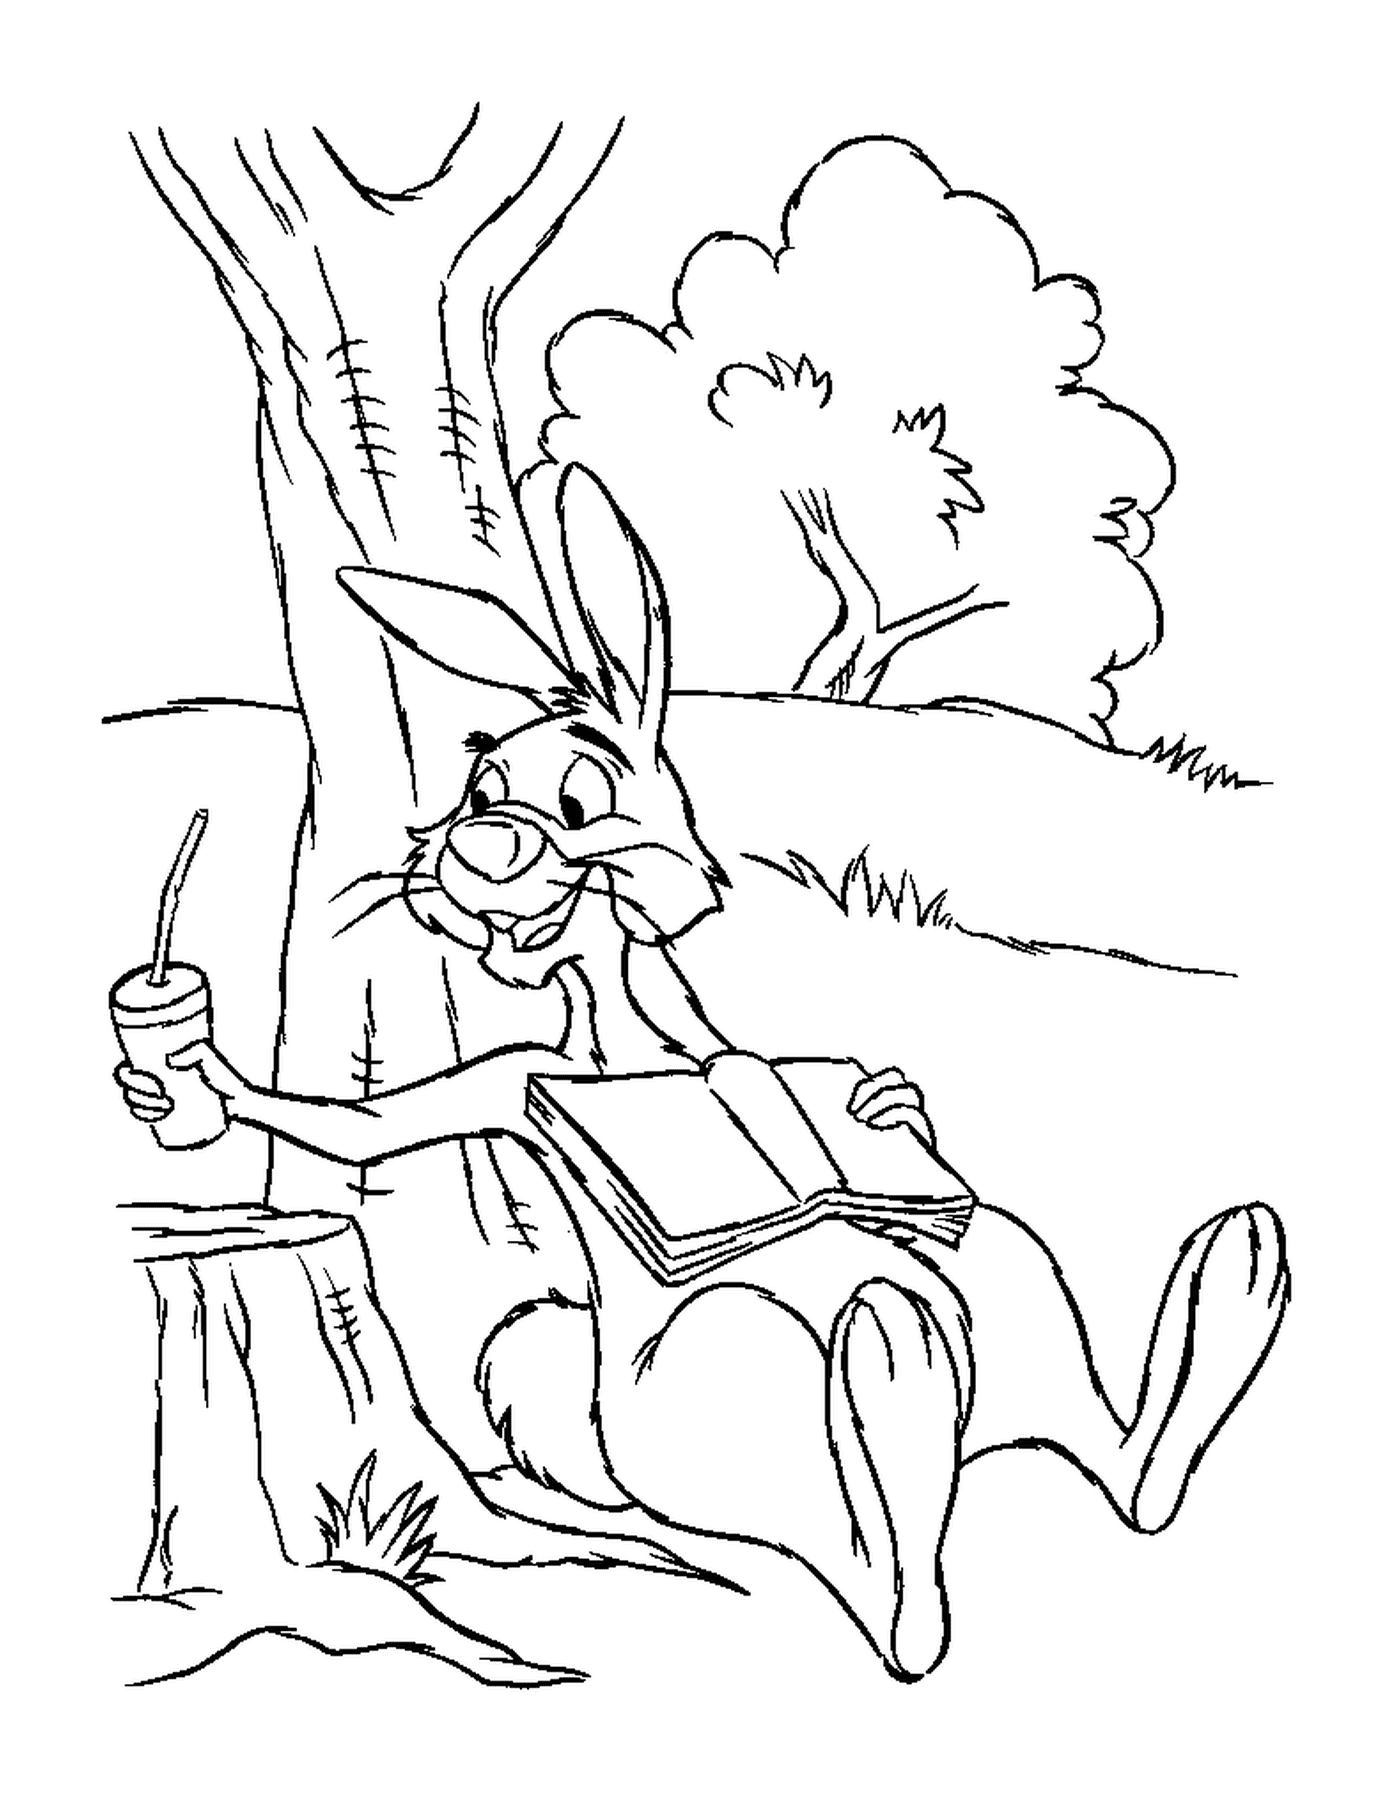  Un conejo sentado en un tocón cerca de un árbol con jugo de zanahoria 